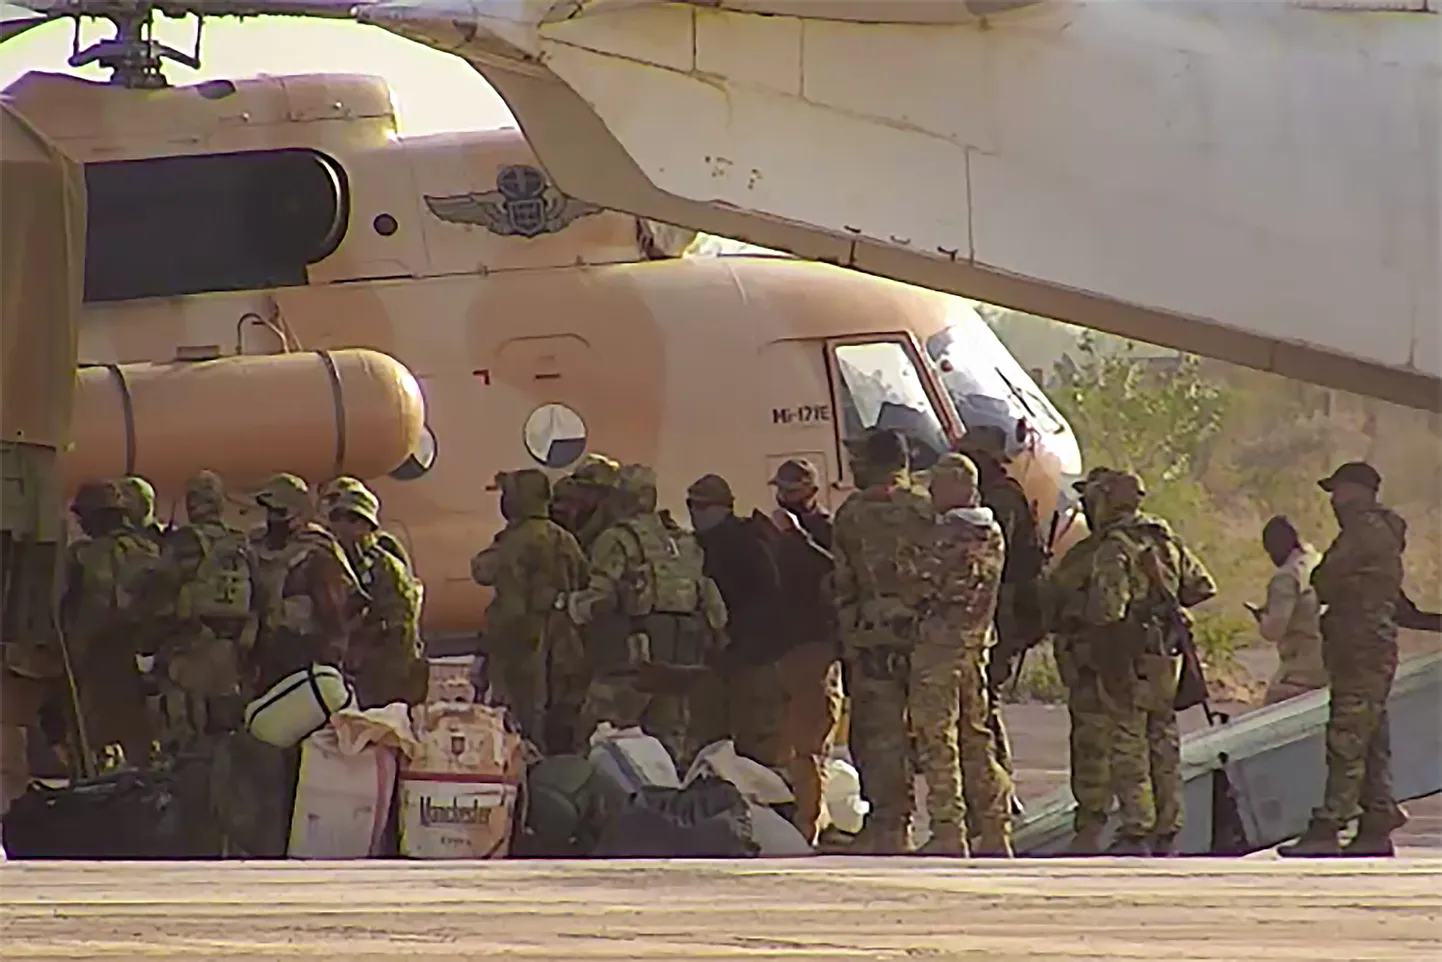 Prantsuse sõjaväe poolt avaldatud fotol on näha Vene palgasõdureid minemas helikopteri pardale Põhja-Malis.